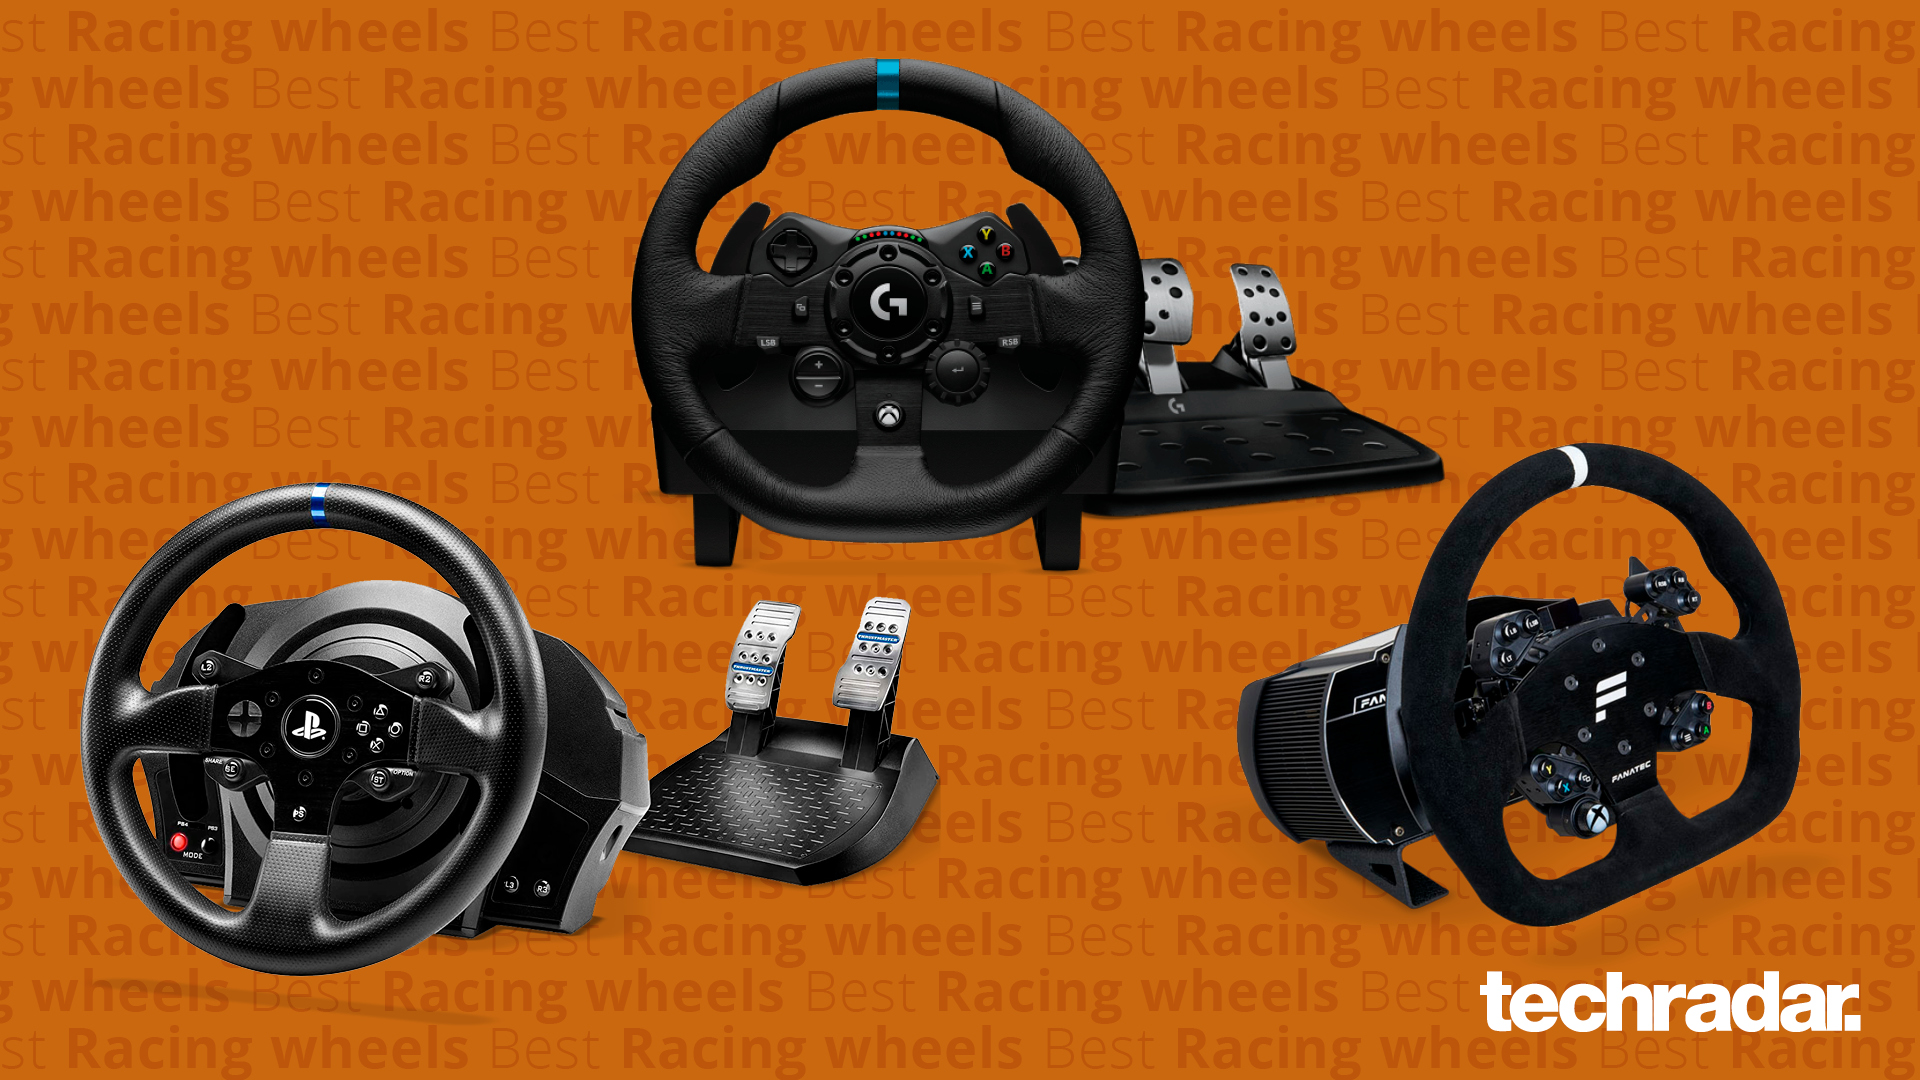 Best racing wheels | TechRadar